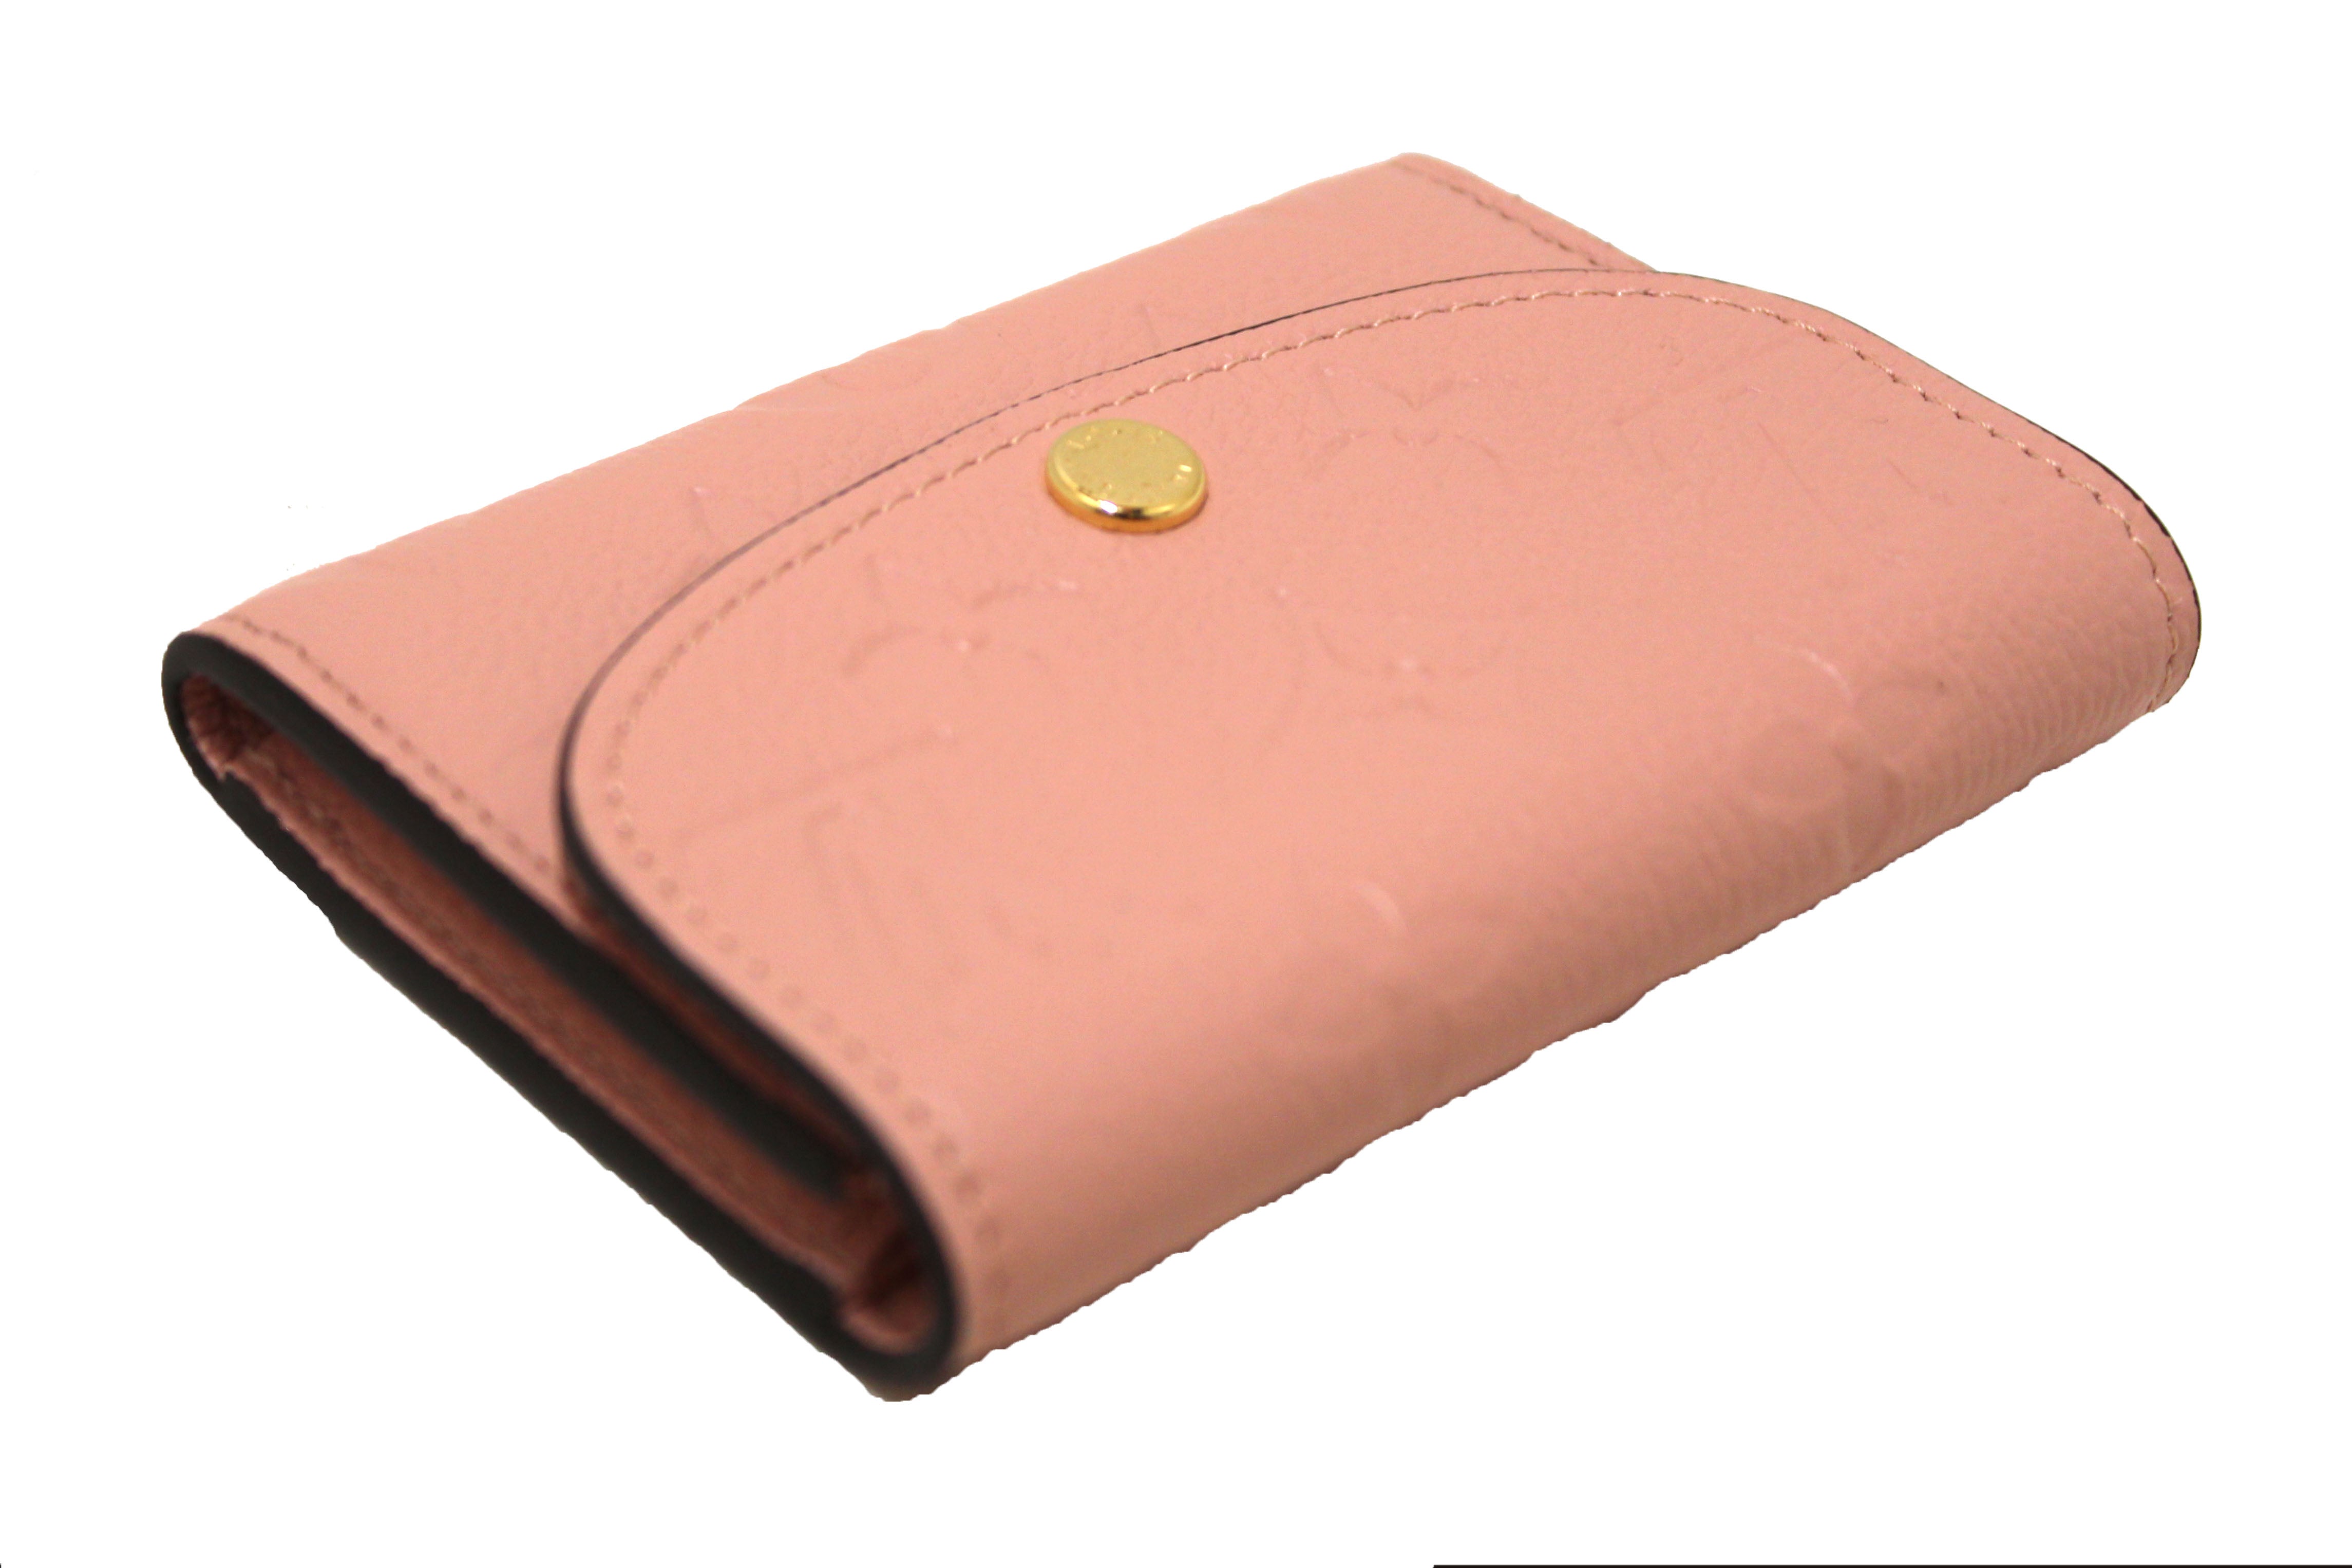 Authentic Louis Vuitton Pink Monogram Empreinte Leather Rosalie Coin Purse